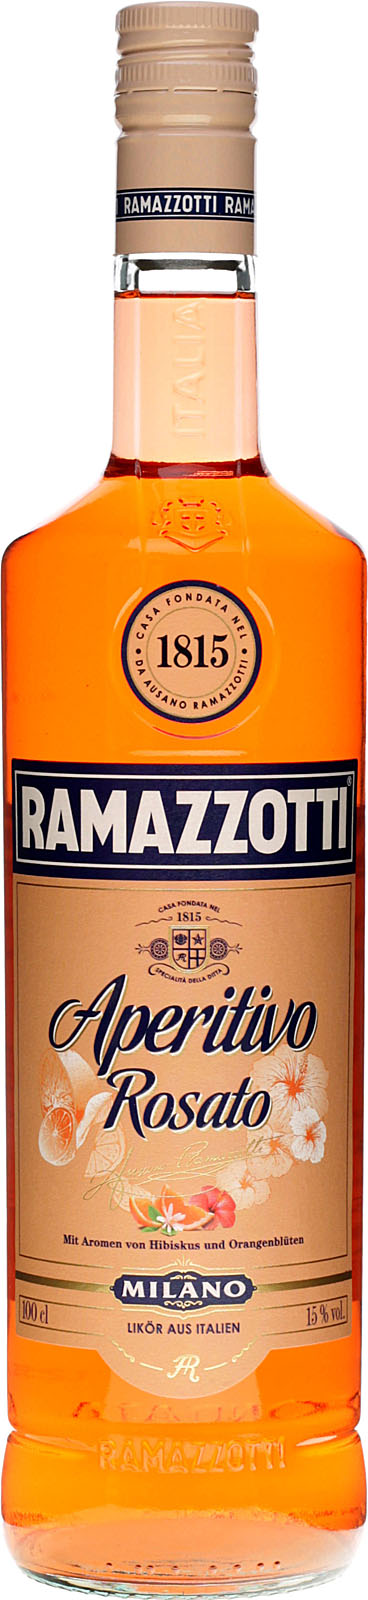 Ramazzotti Aperitivo Rosato kau bei 1 uns günstig Liter